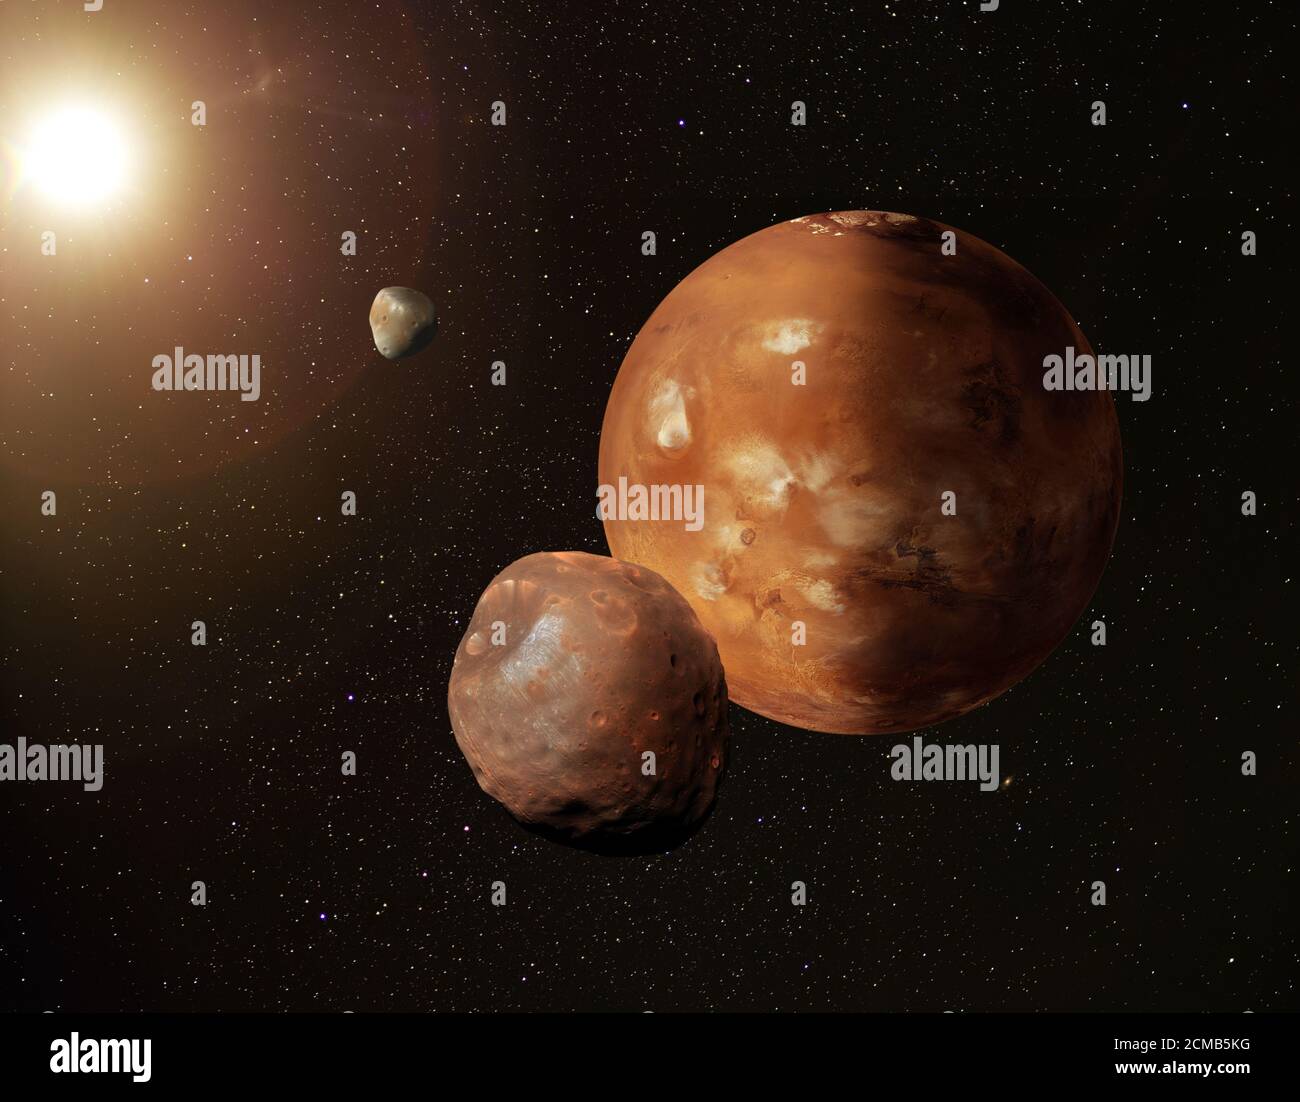 Illustrazione del pianeta Marte nello spazio stellato con le sue lune Phobos e Deimos. Alcuni elementi forniti dalla NASA. Foto Stock